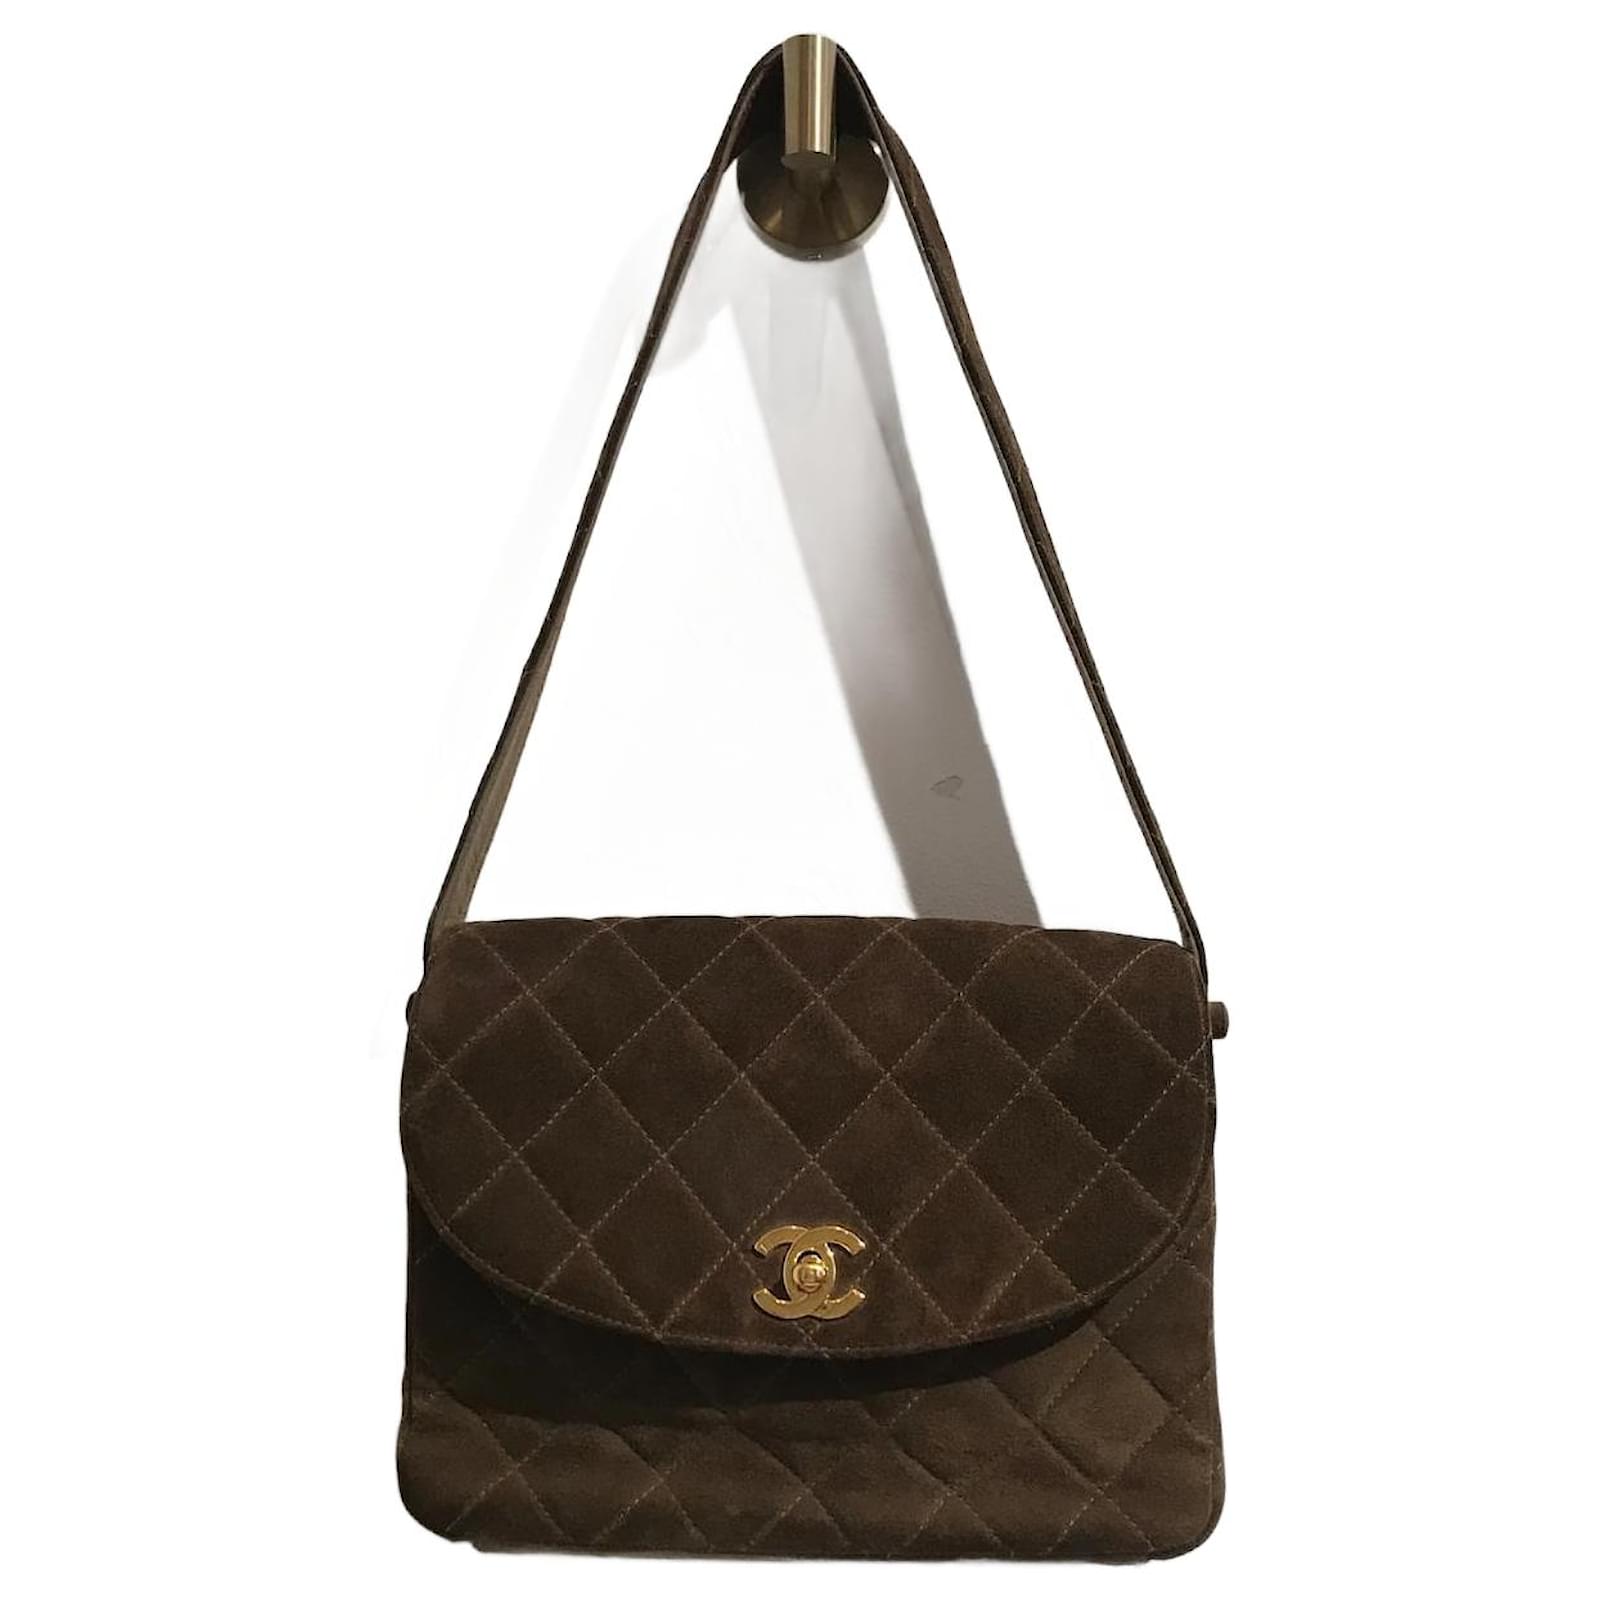 Handbags Chanel Chanel Handbags T. Suede